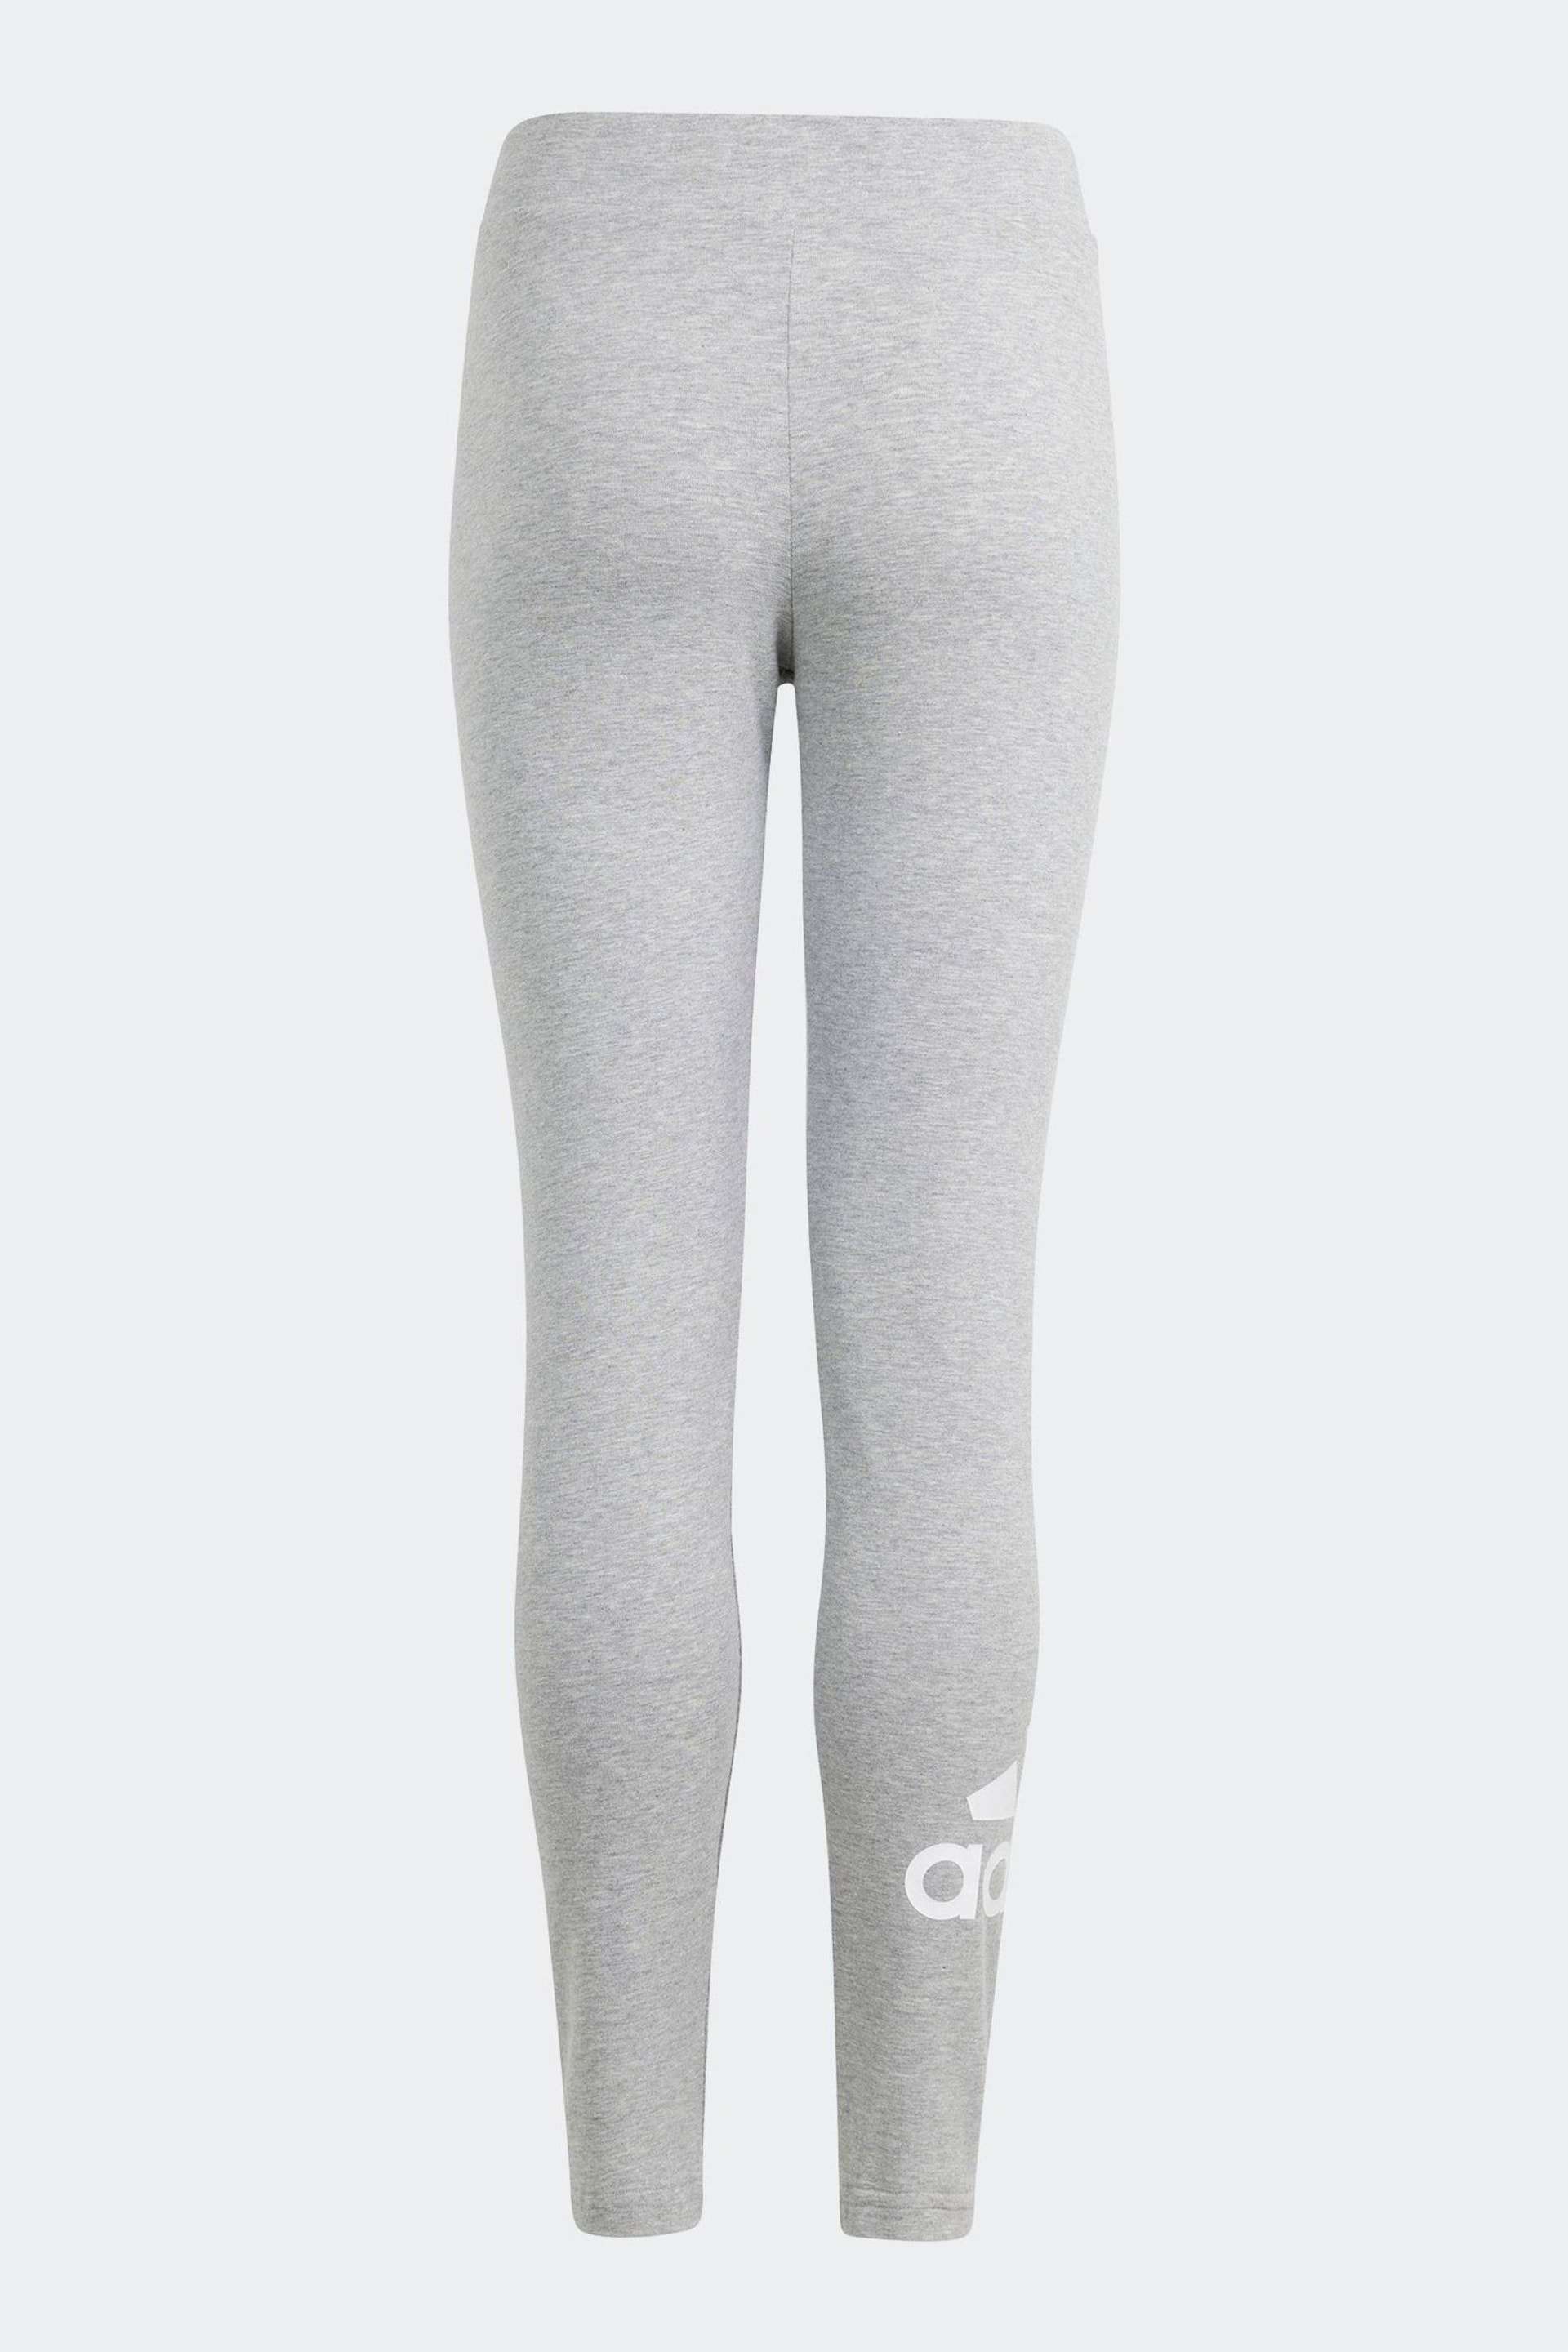 adidas Grey Sportswear Essentials Big Logo Cotton Leggings - Image 2 of 5